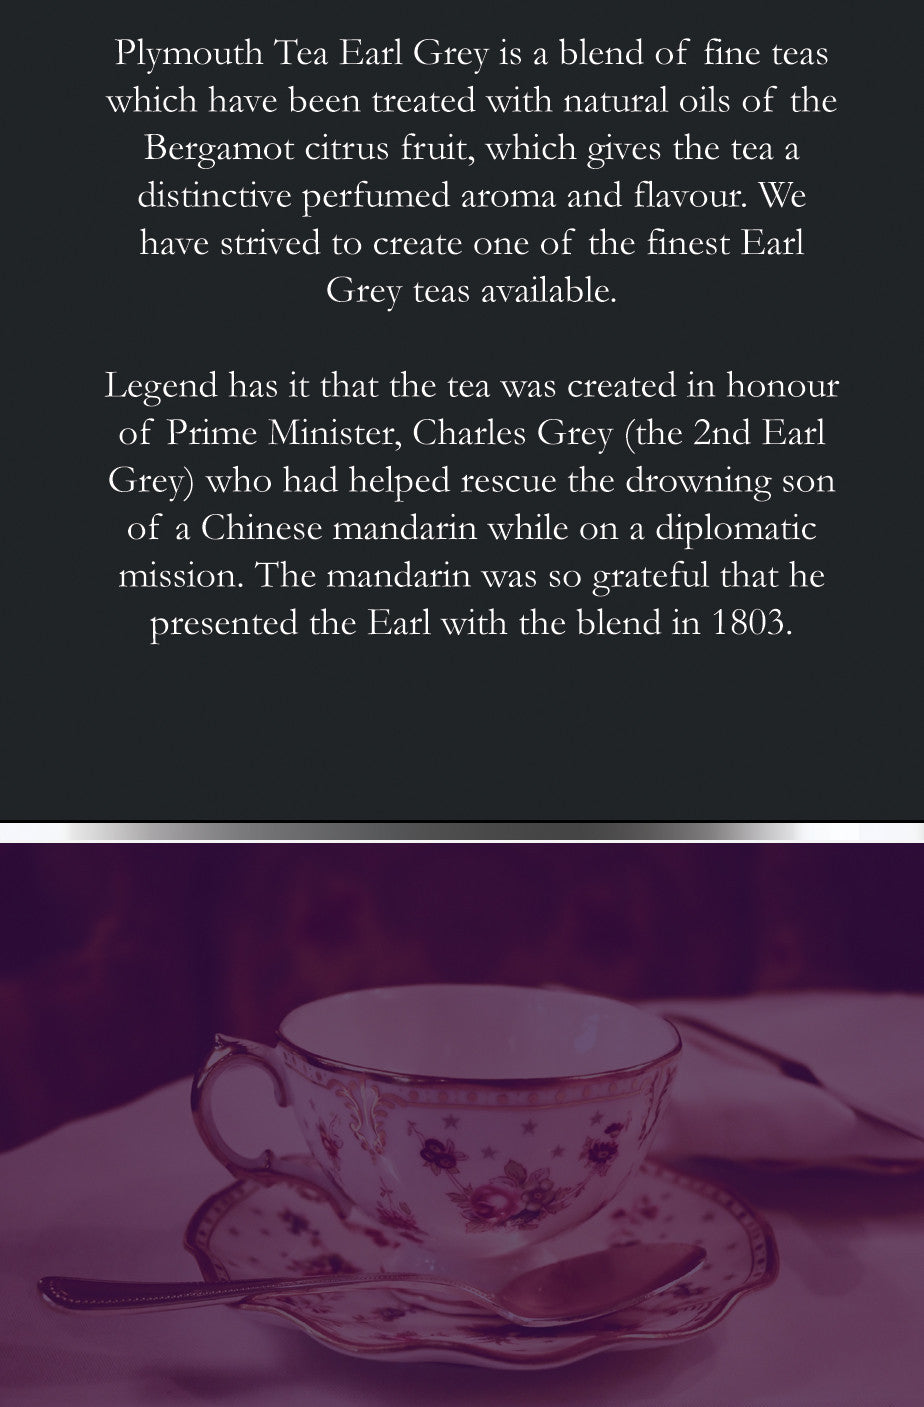 Plymouth Tea - Luxury Tea - Earl Grey Tea - Takaisin